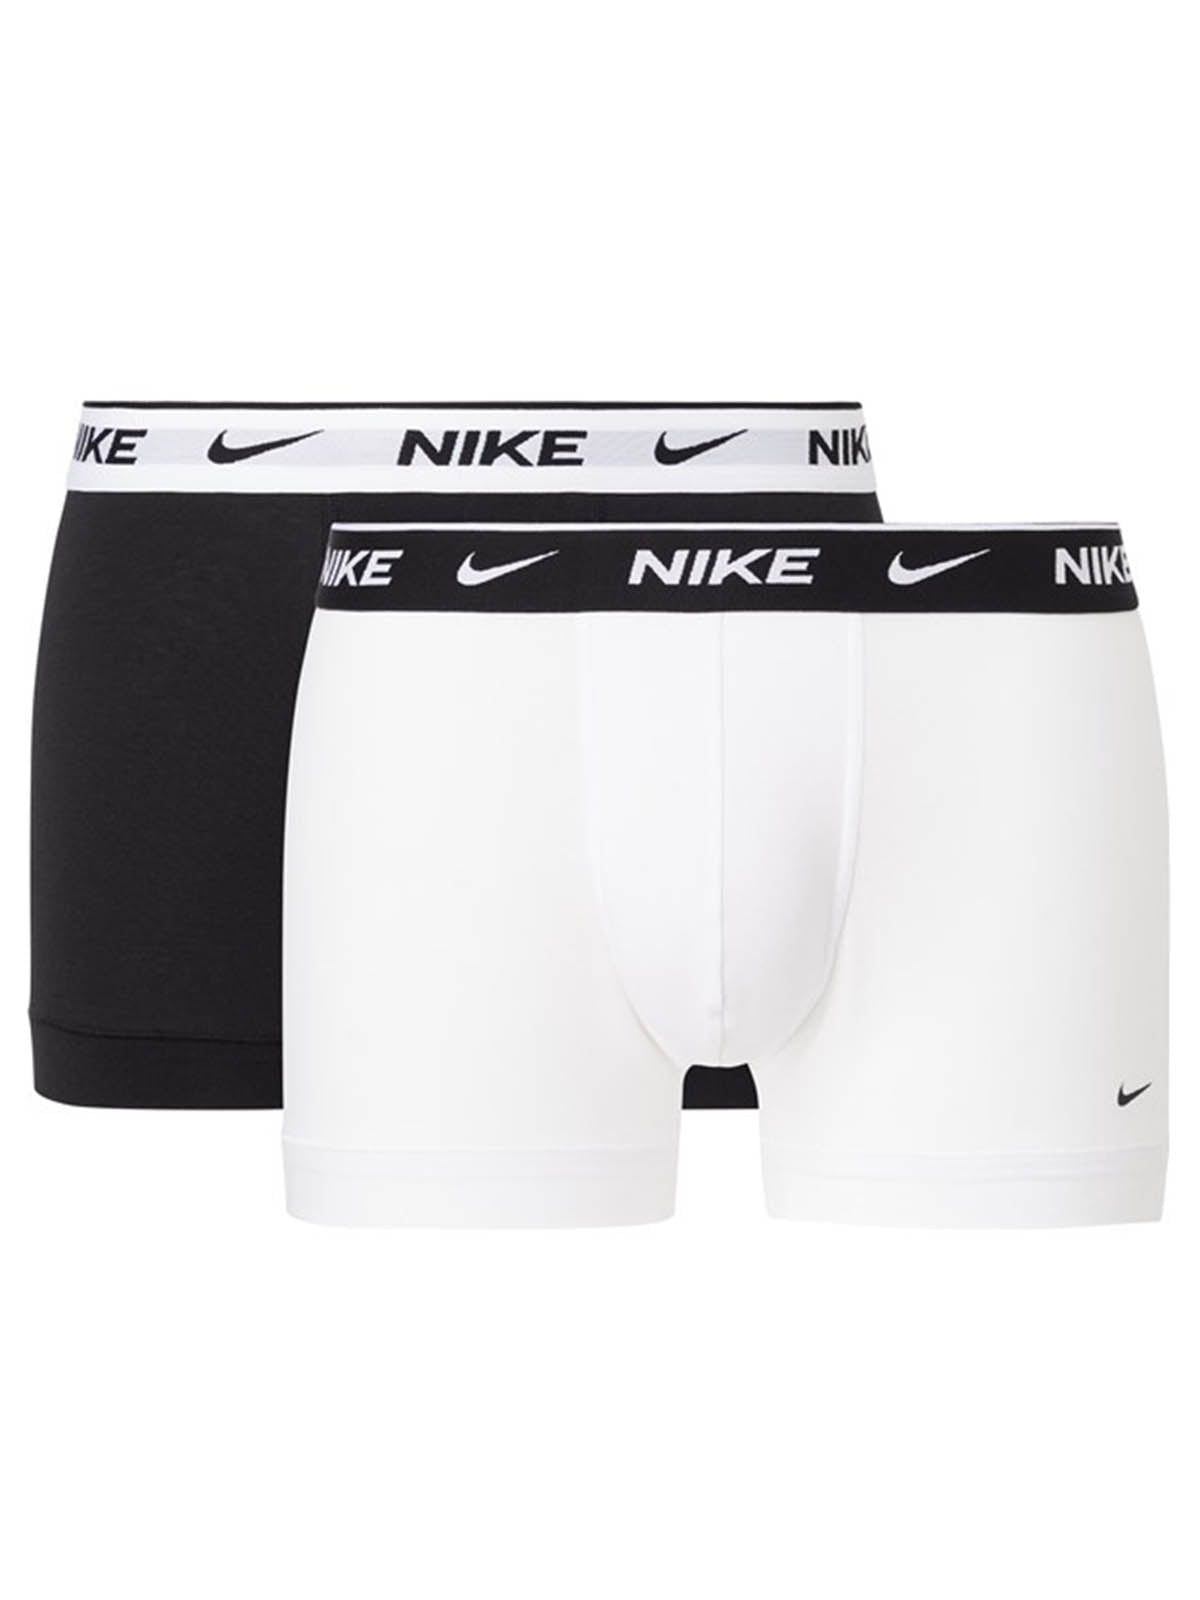 Boxer aderenti Uomo Nike - Nike Everyday Cotton Stretch Trunk 2Pk - Nero